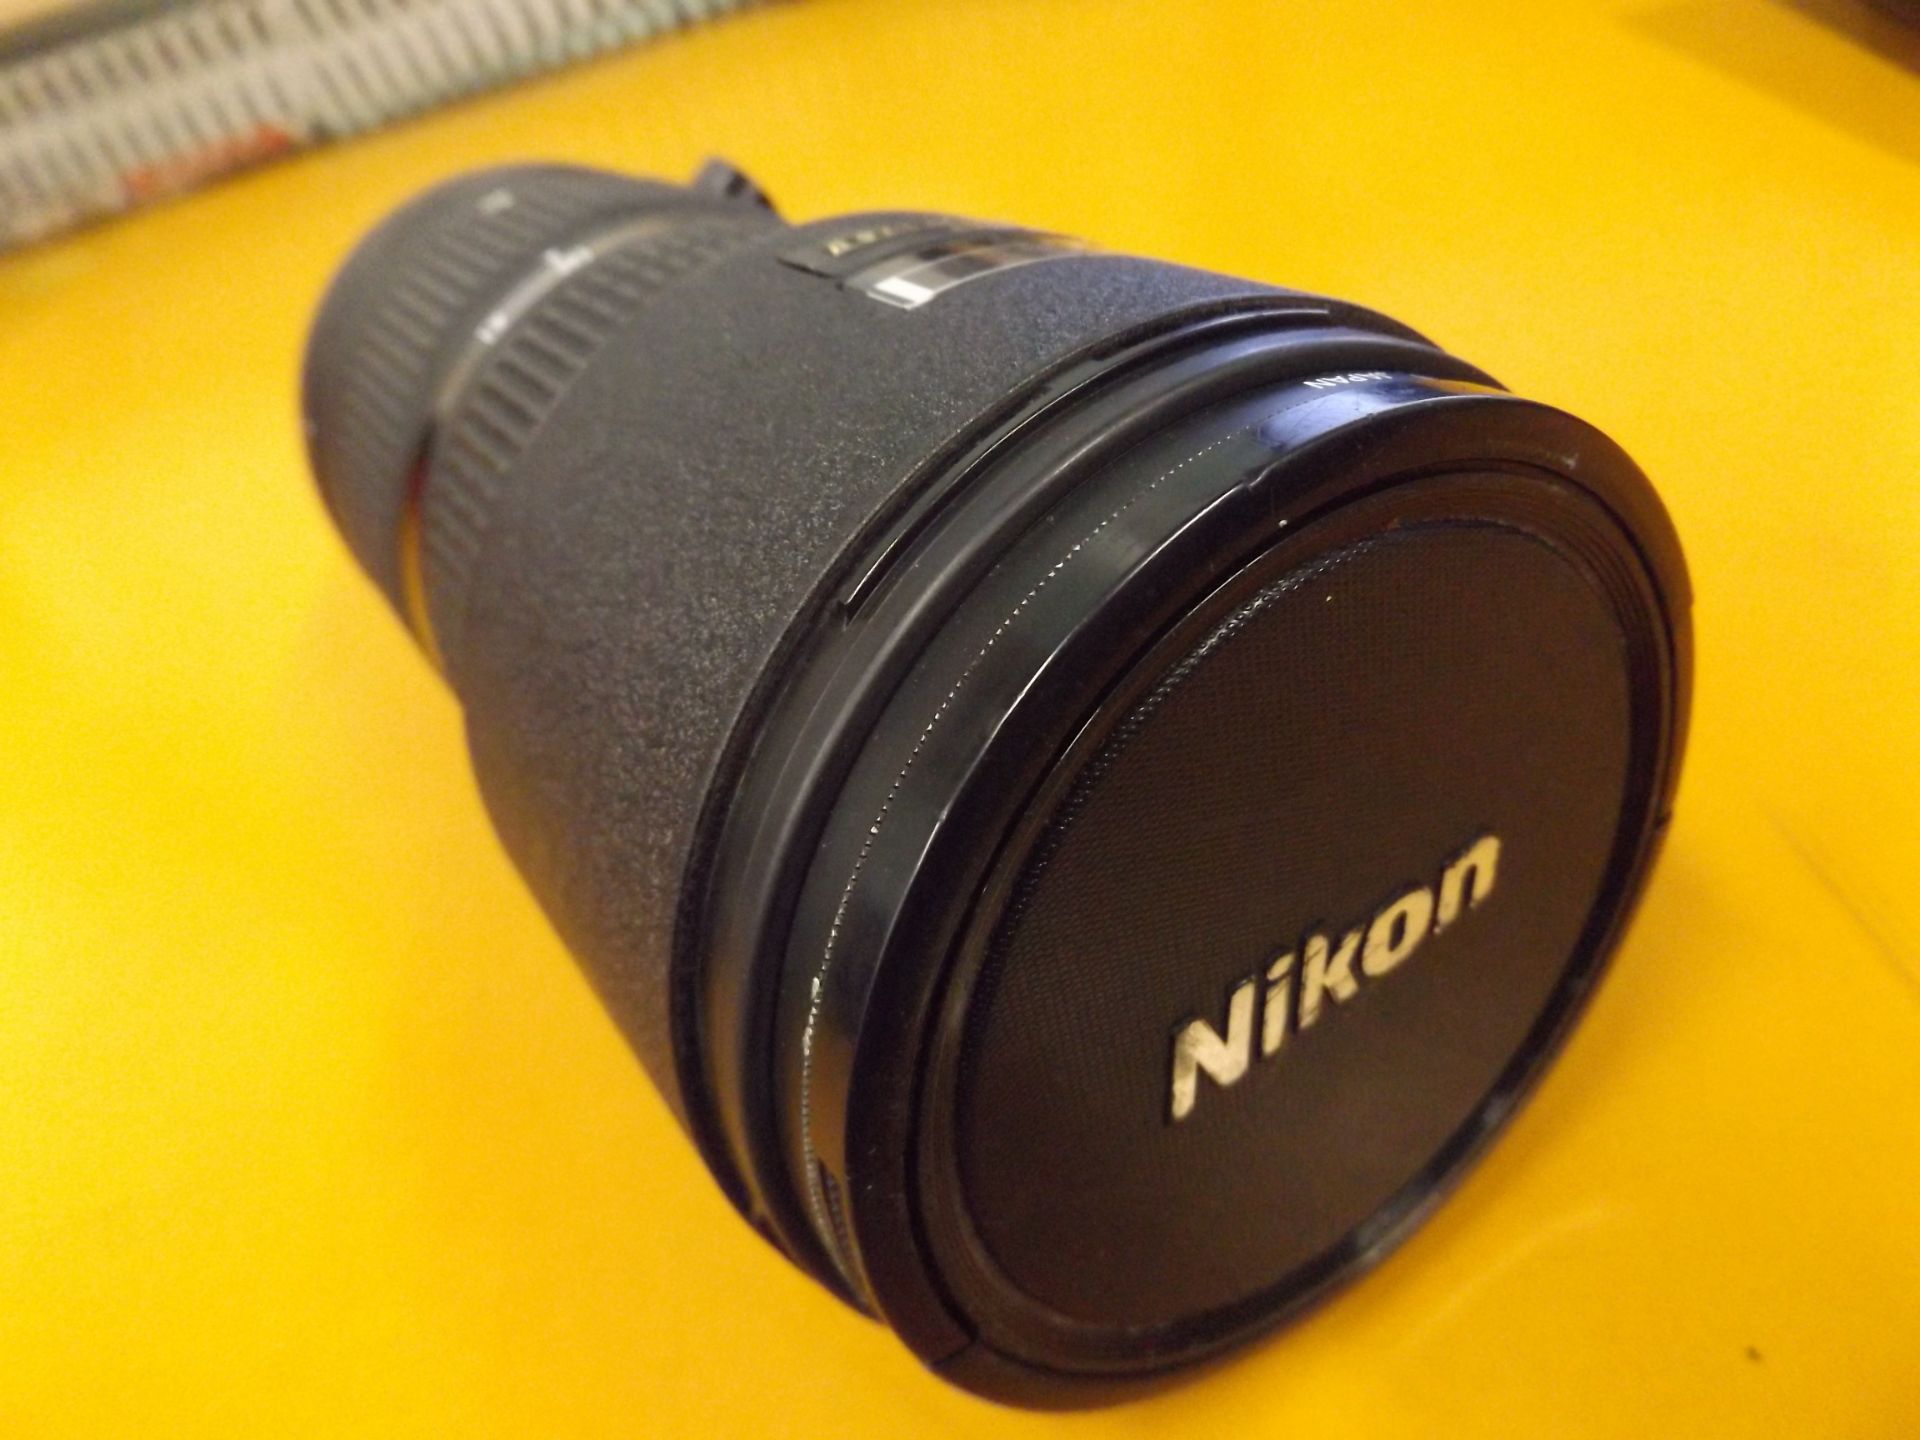 Nikon ED AF Nikkor 80-200mm 1:2.8 D Lense with Leather Case - Image 5 of 10